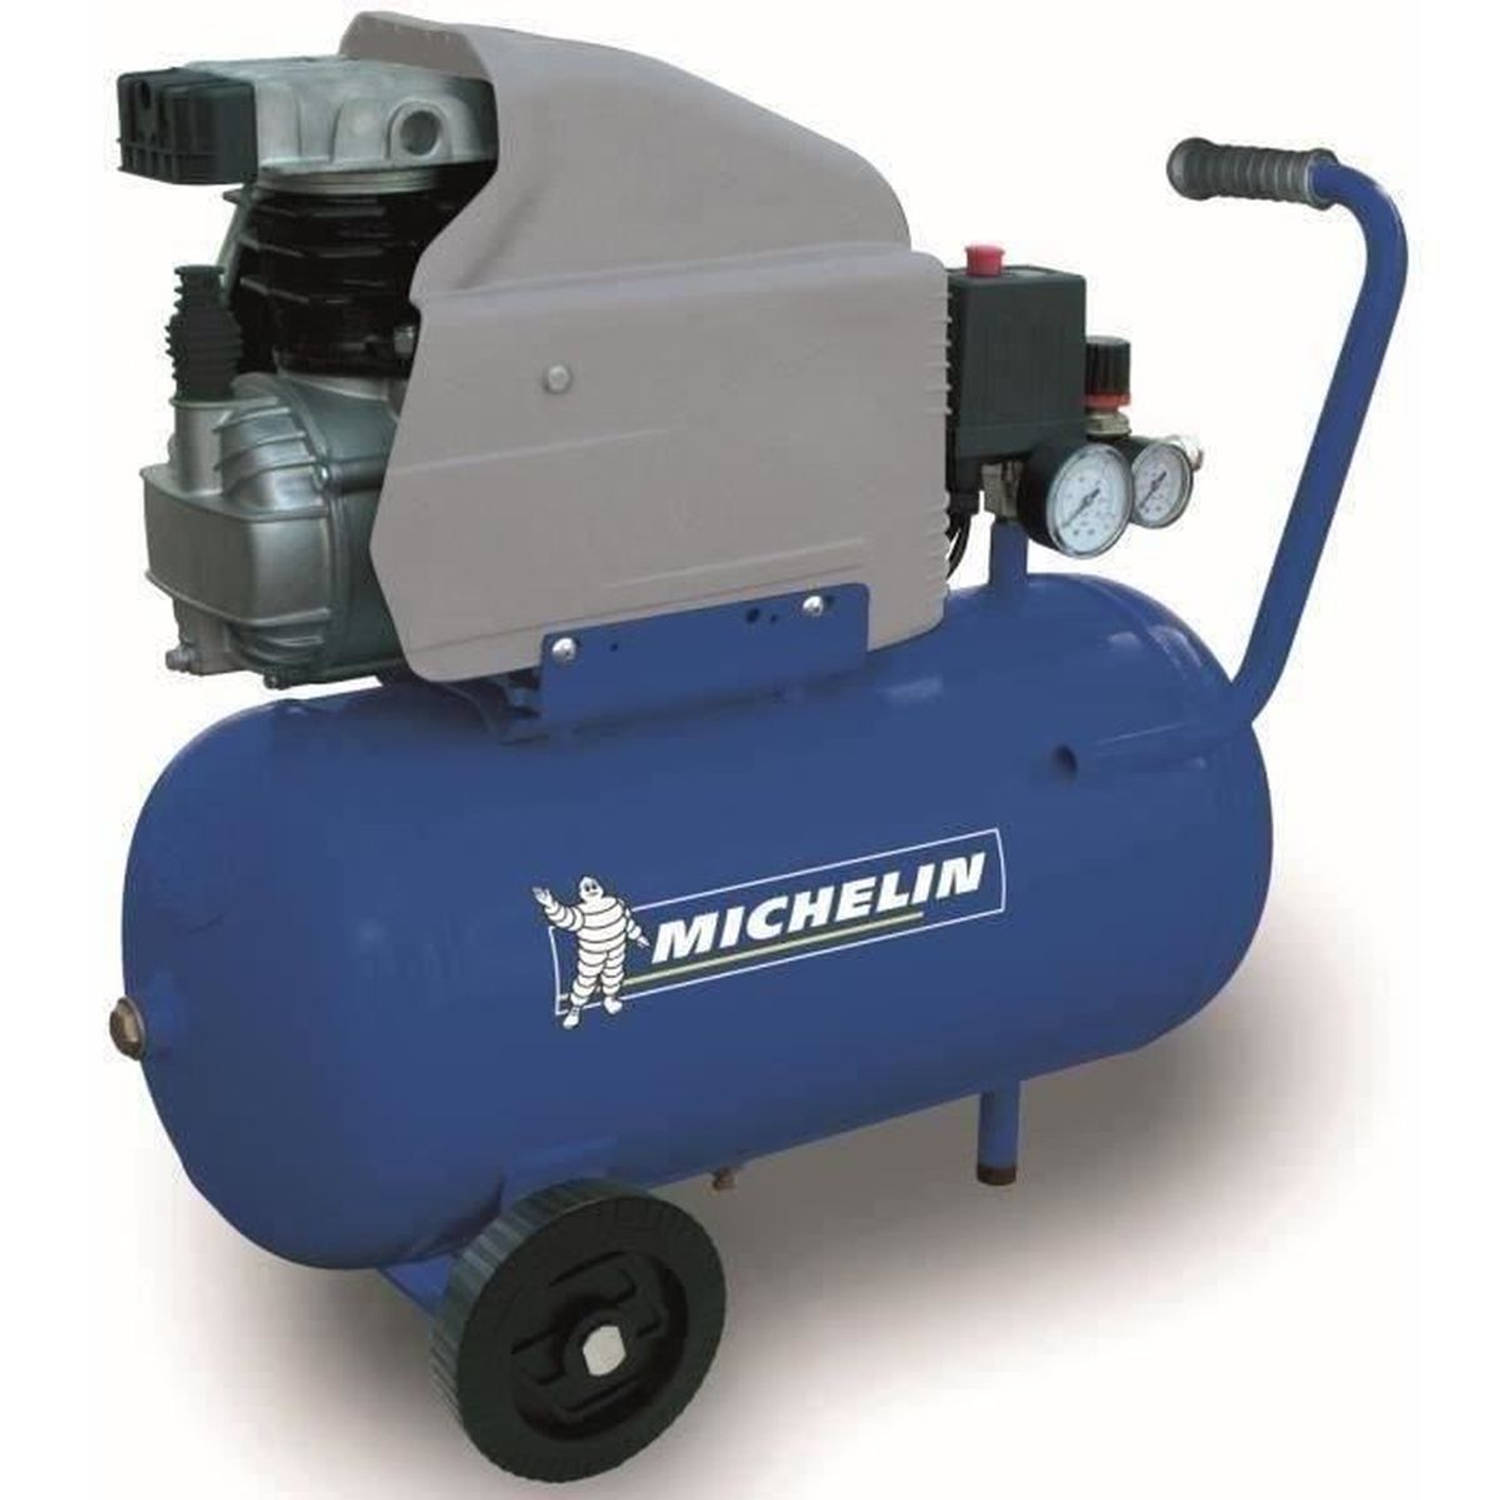 MICHELIN 24 Liter compressor